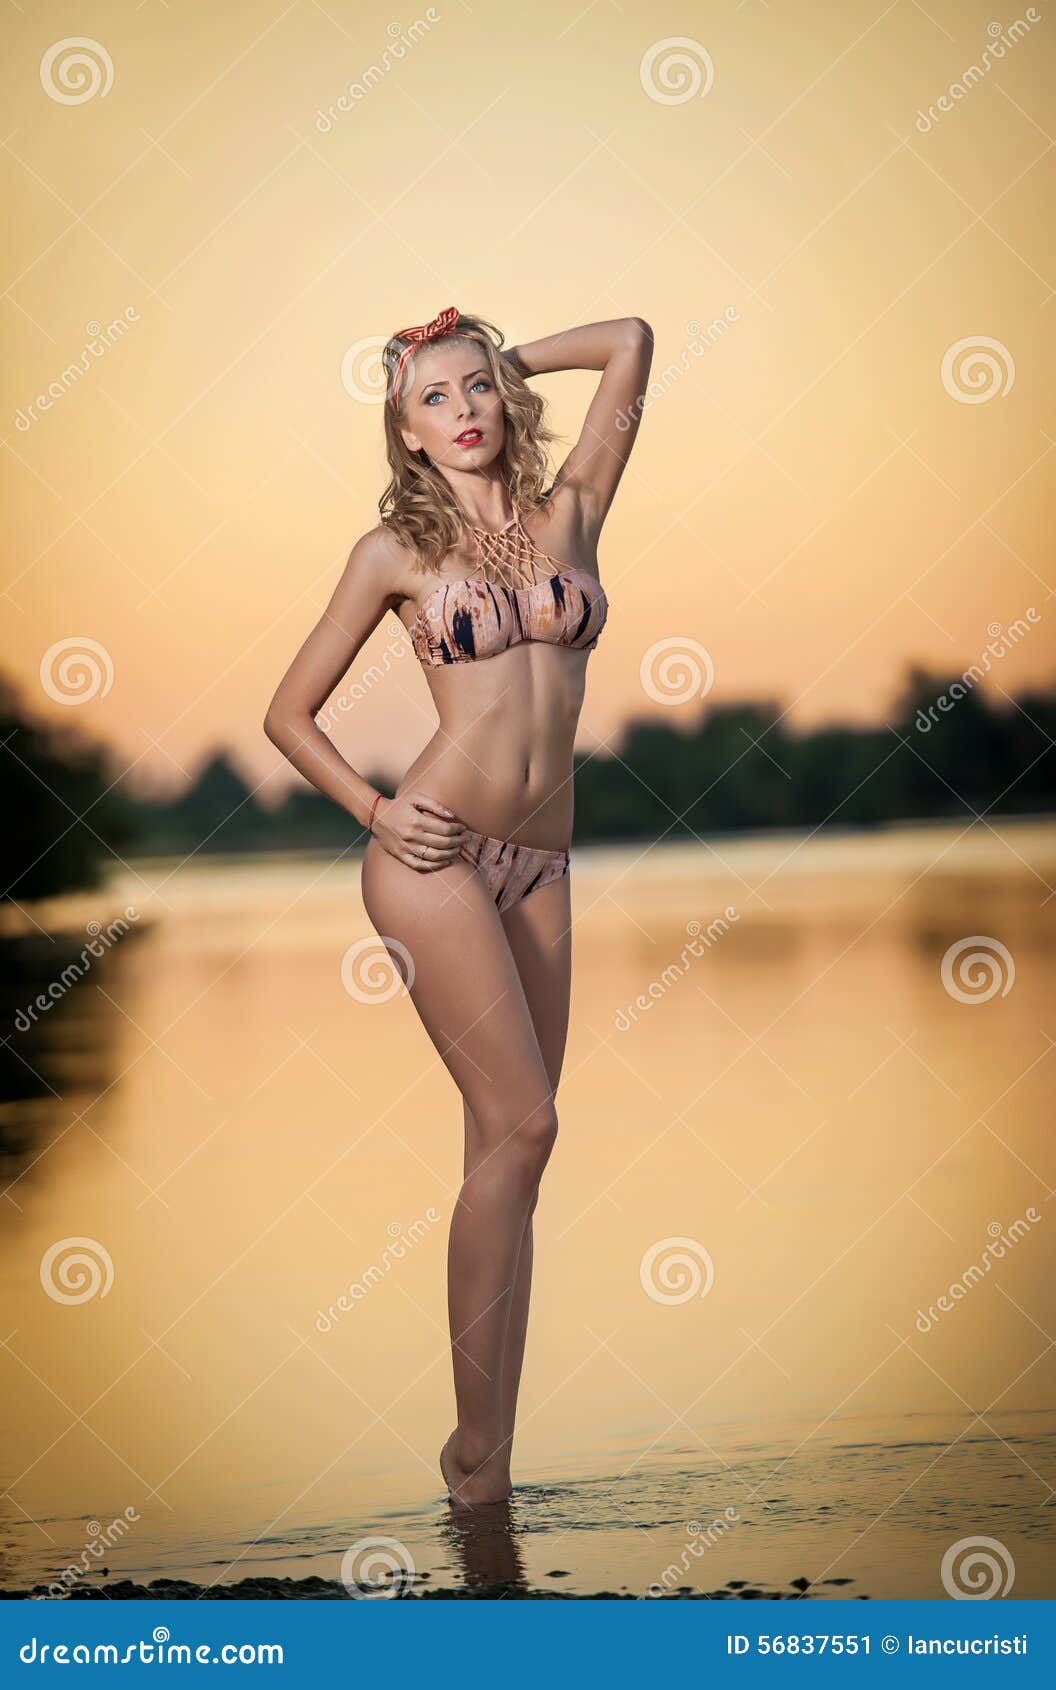 aniket belwalkar add sexy teen bikini nude photo